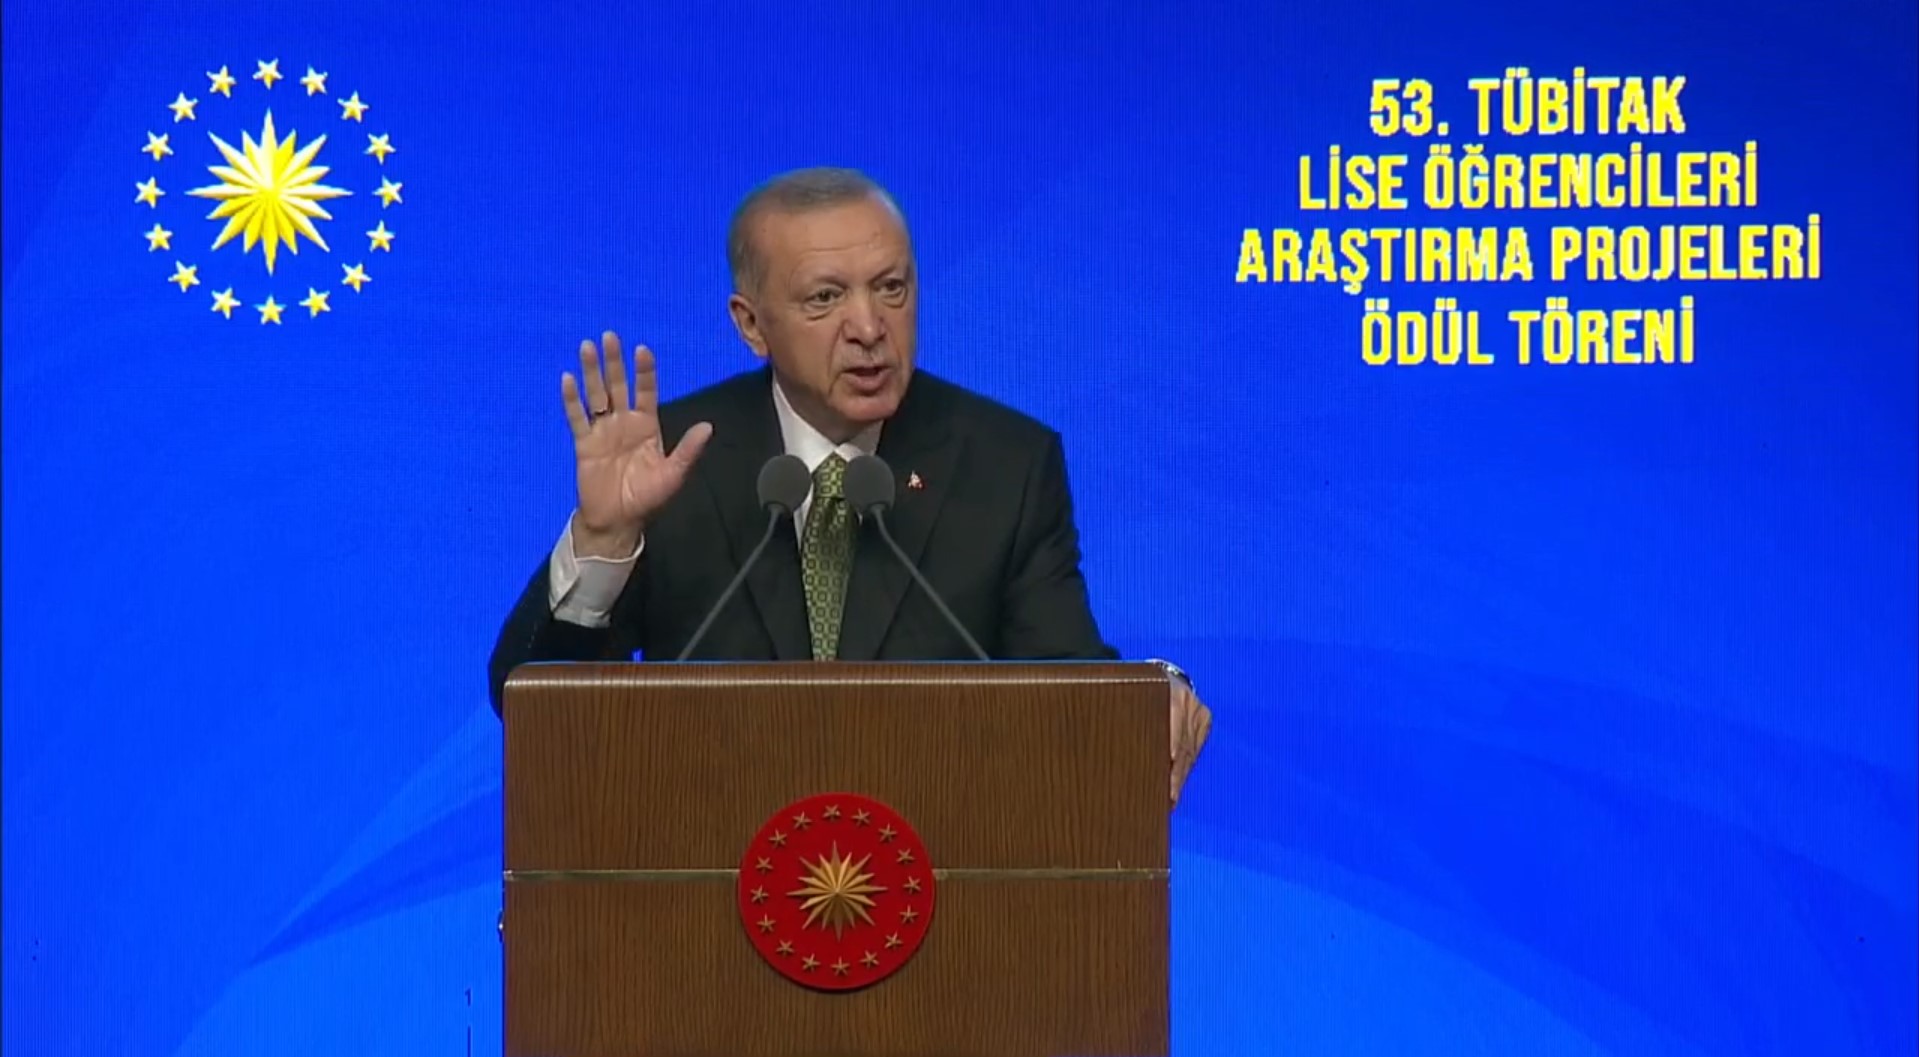 Cumhurbaşkanı Erdoğan'dan gençlere mesaj: Batının ilmini alacaksın, ahlaksızlığını değil